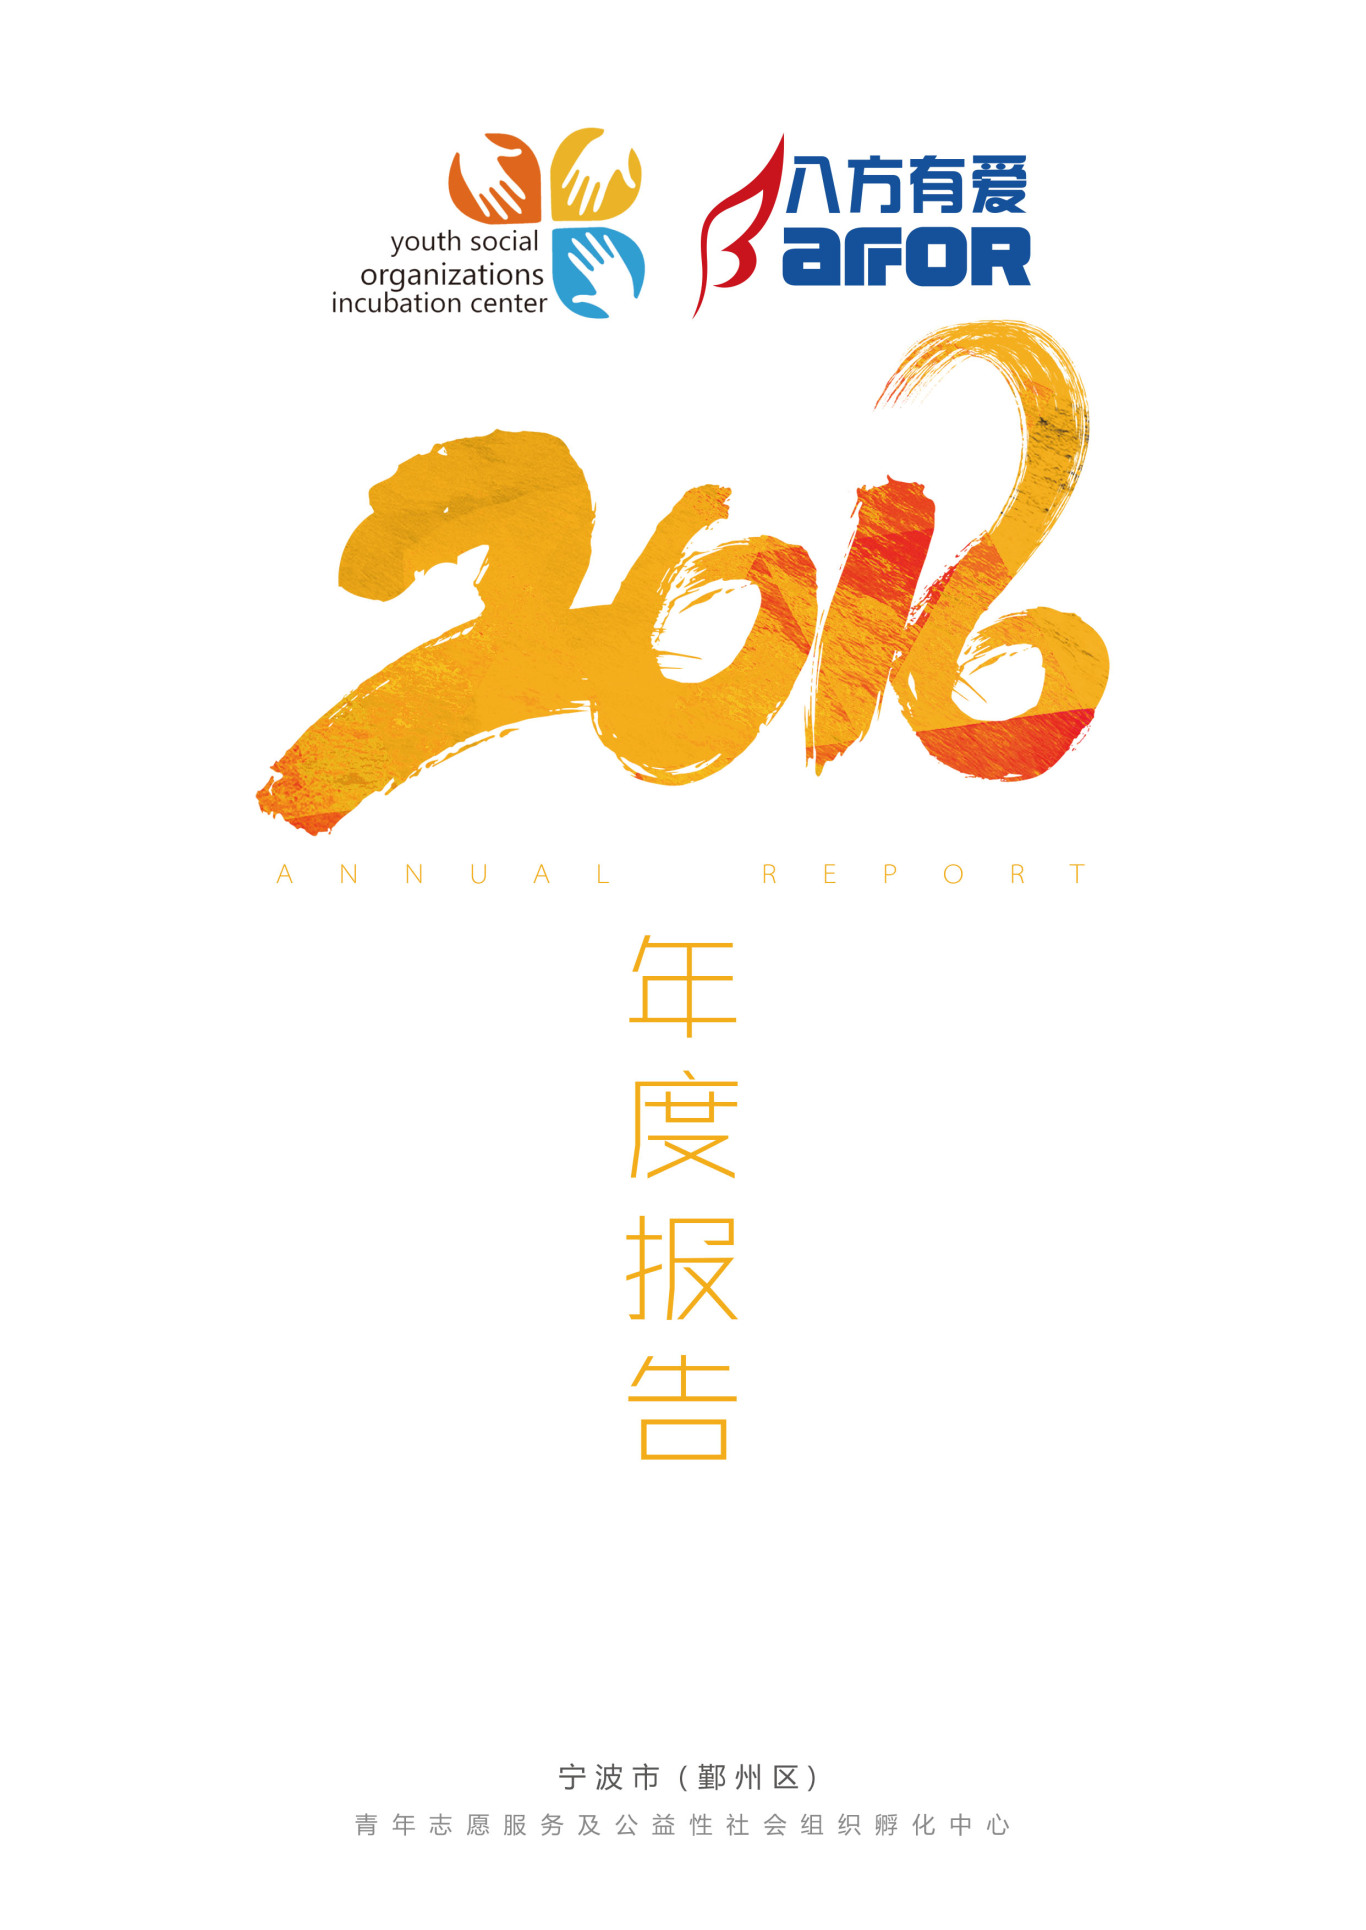 宁波市青年志愿服务及公益性社会组织孵化中心年度报告图0